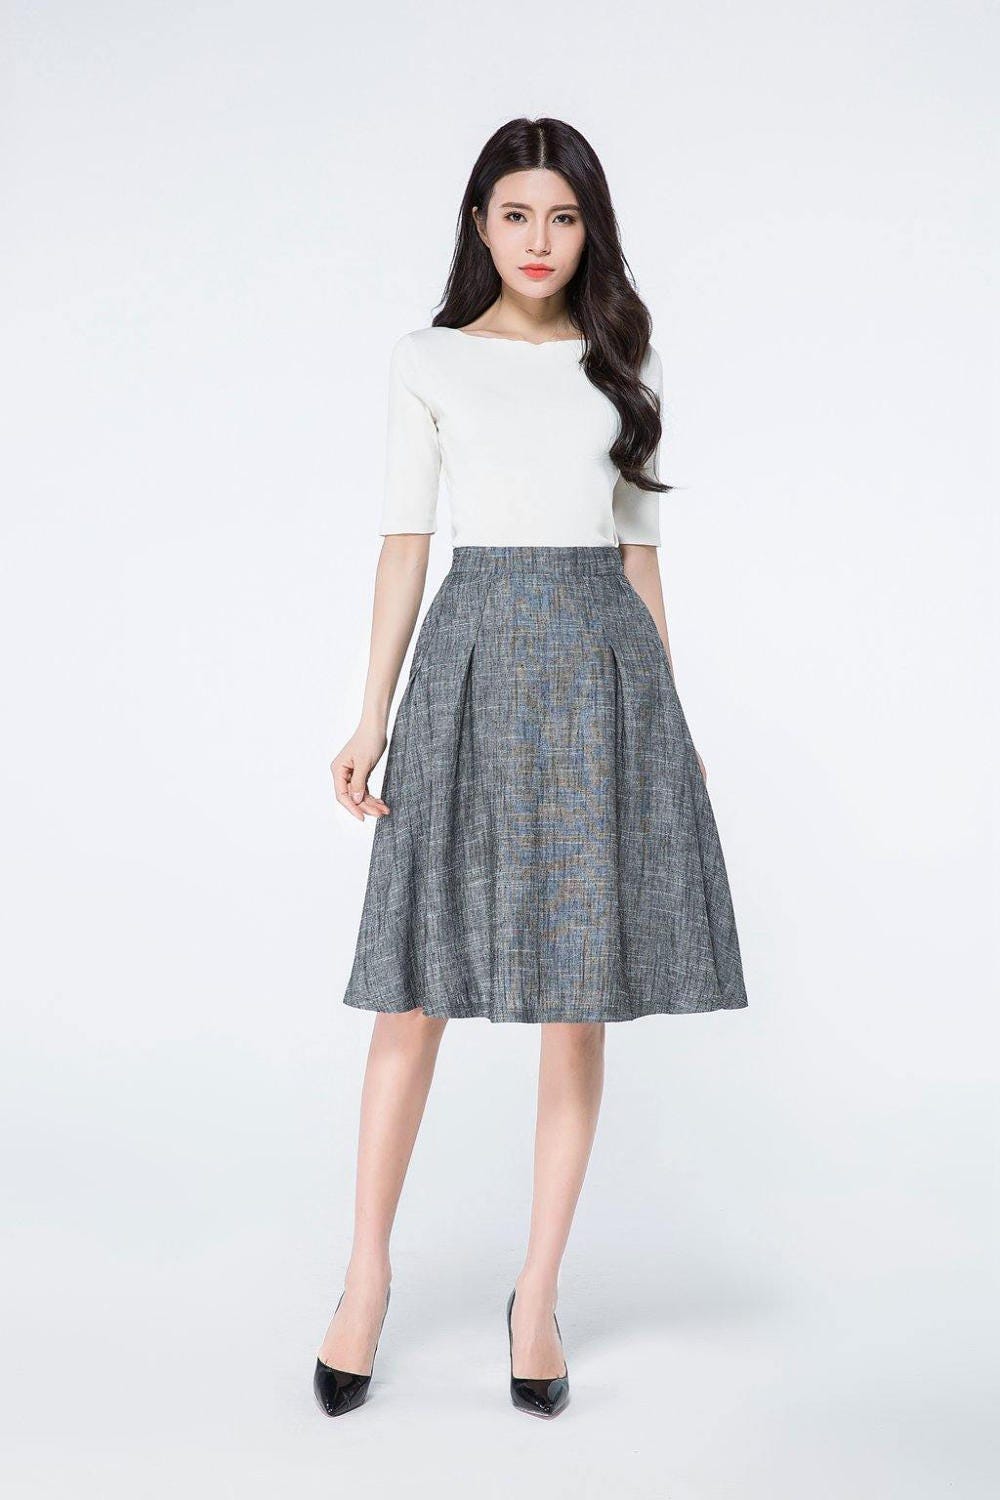 Gray linen skirt knee length skirtlinen skits mini skirt